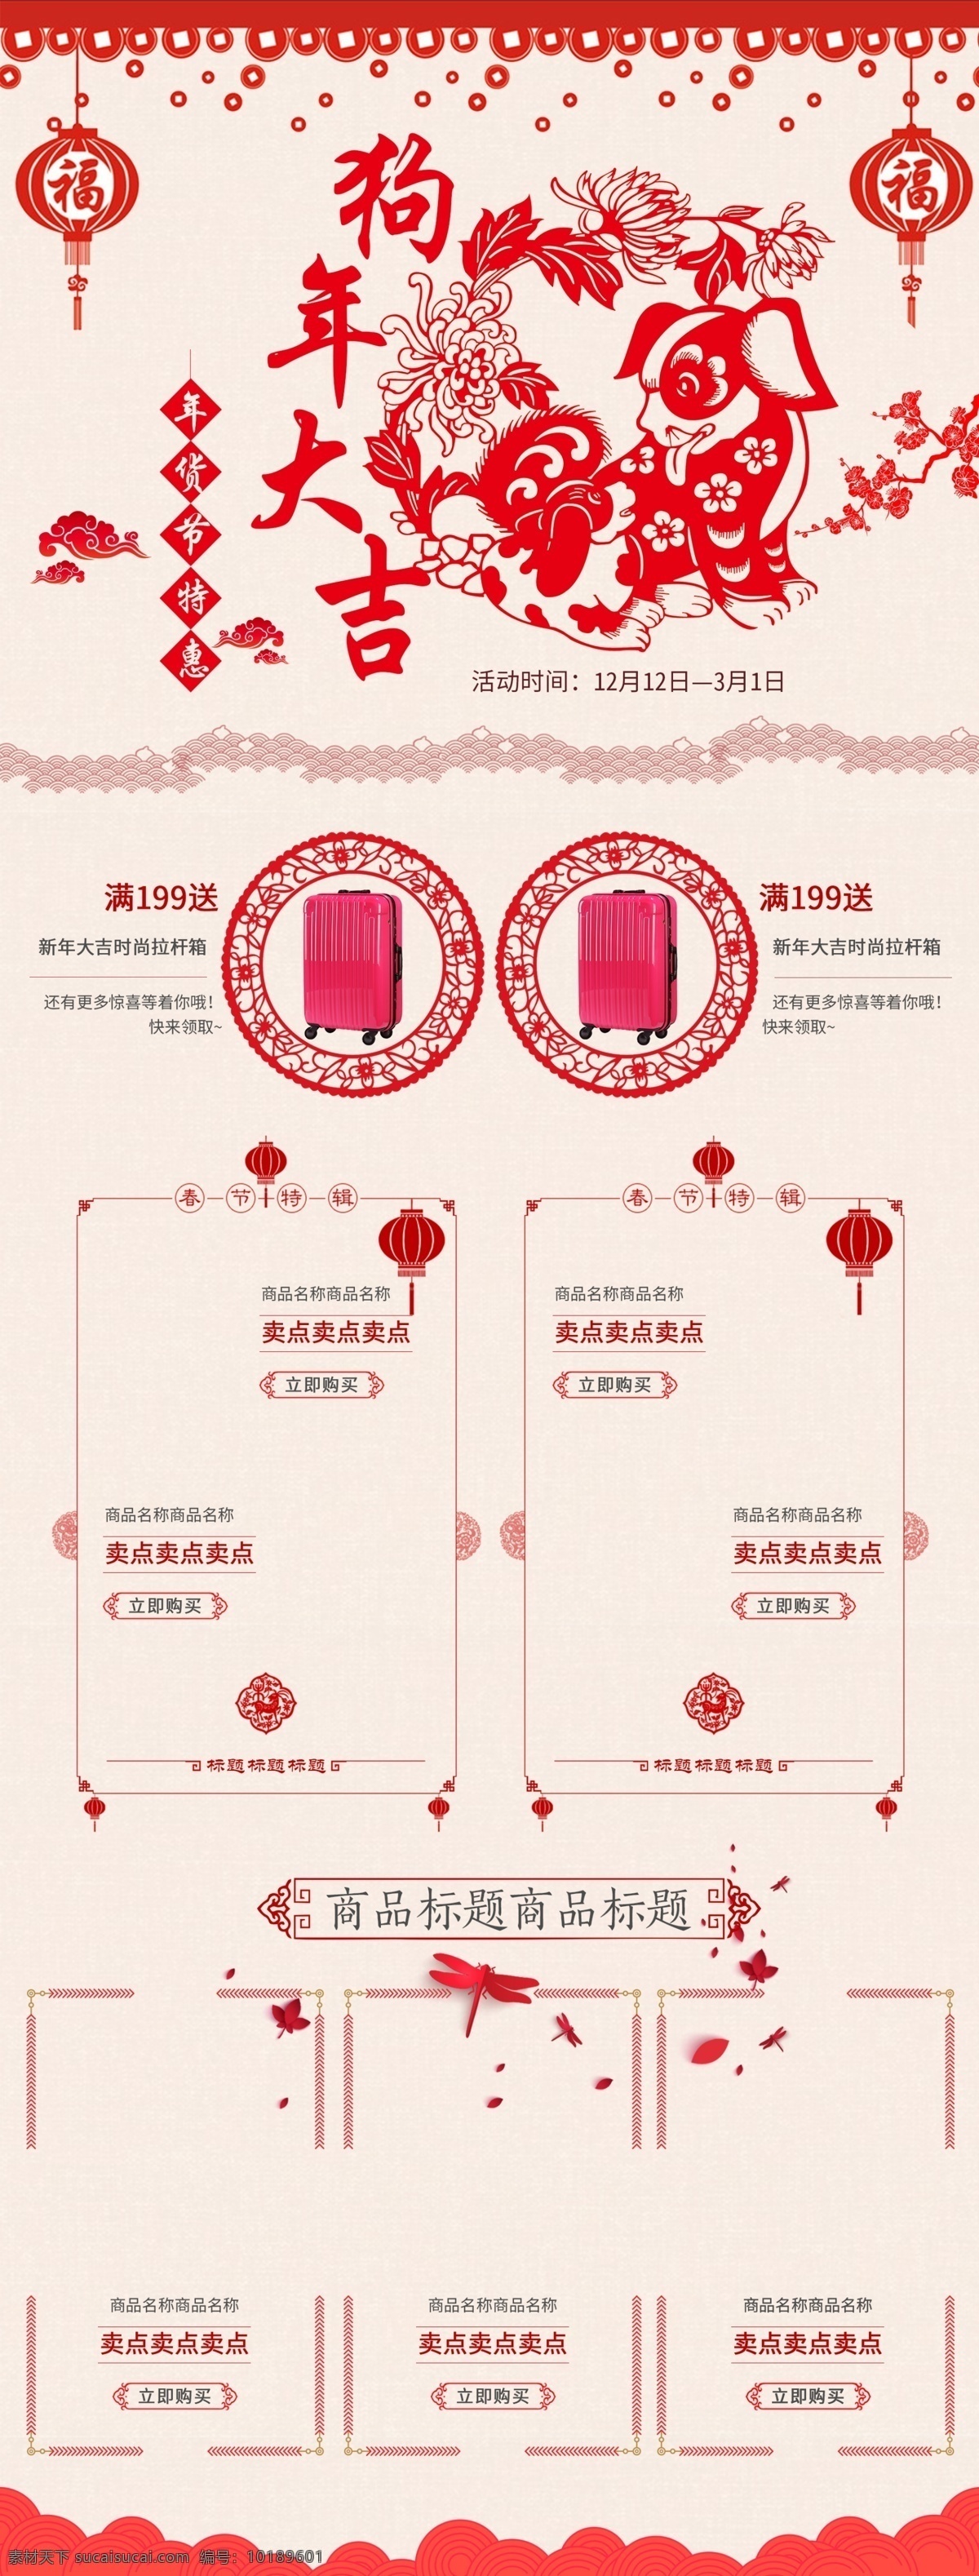 红色 剪纸 节日 喜庆 年货 节 淘宝 电商 首页 年货节